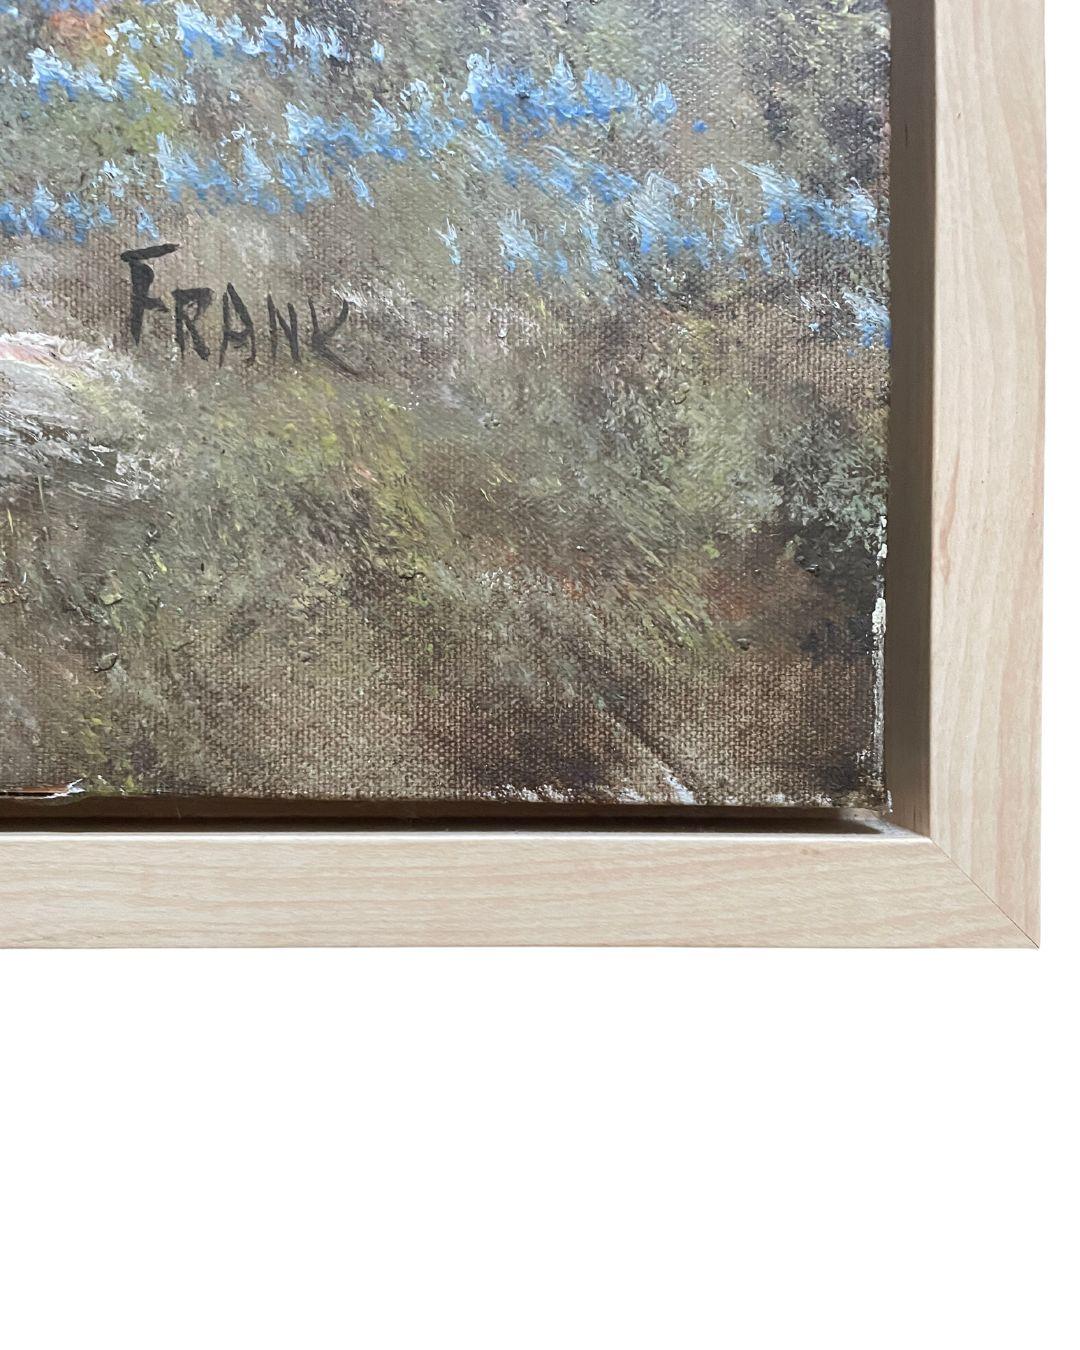 Peinture vintage d'un paysage de désert flottant dans un cadre simple en bois blond représentant une superbe fleur de printemps au premier plan avec un cactus comme point focal et une chaîne de montagnes à l'arrière-plan. Signé en bas à gauche : I